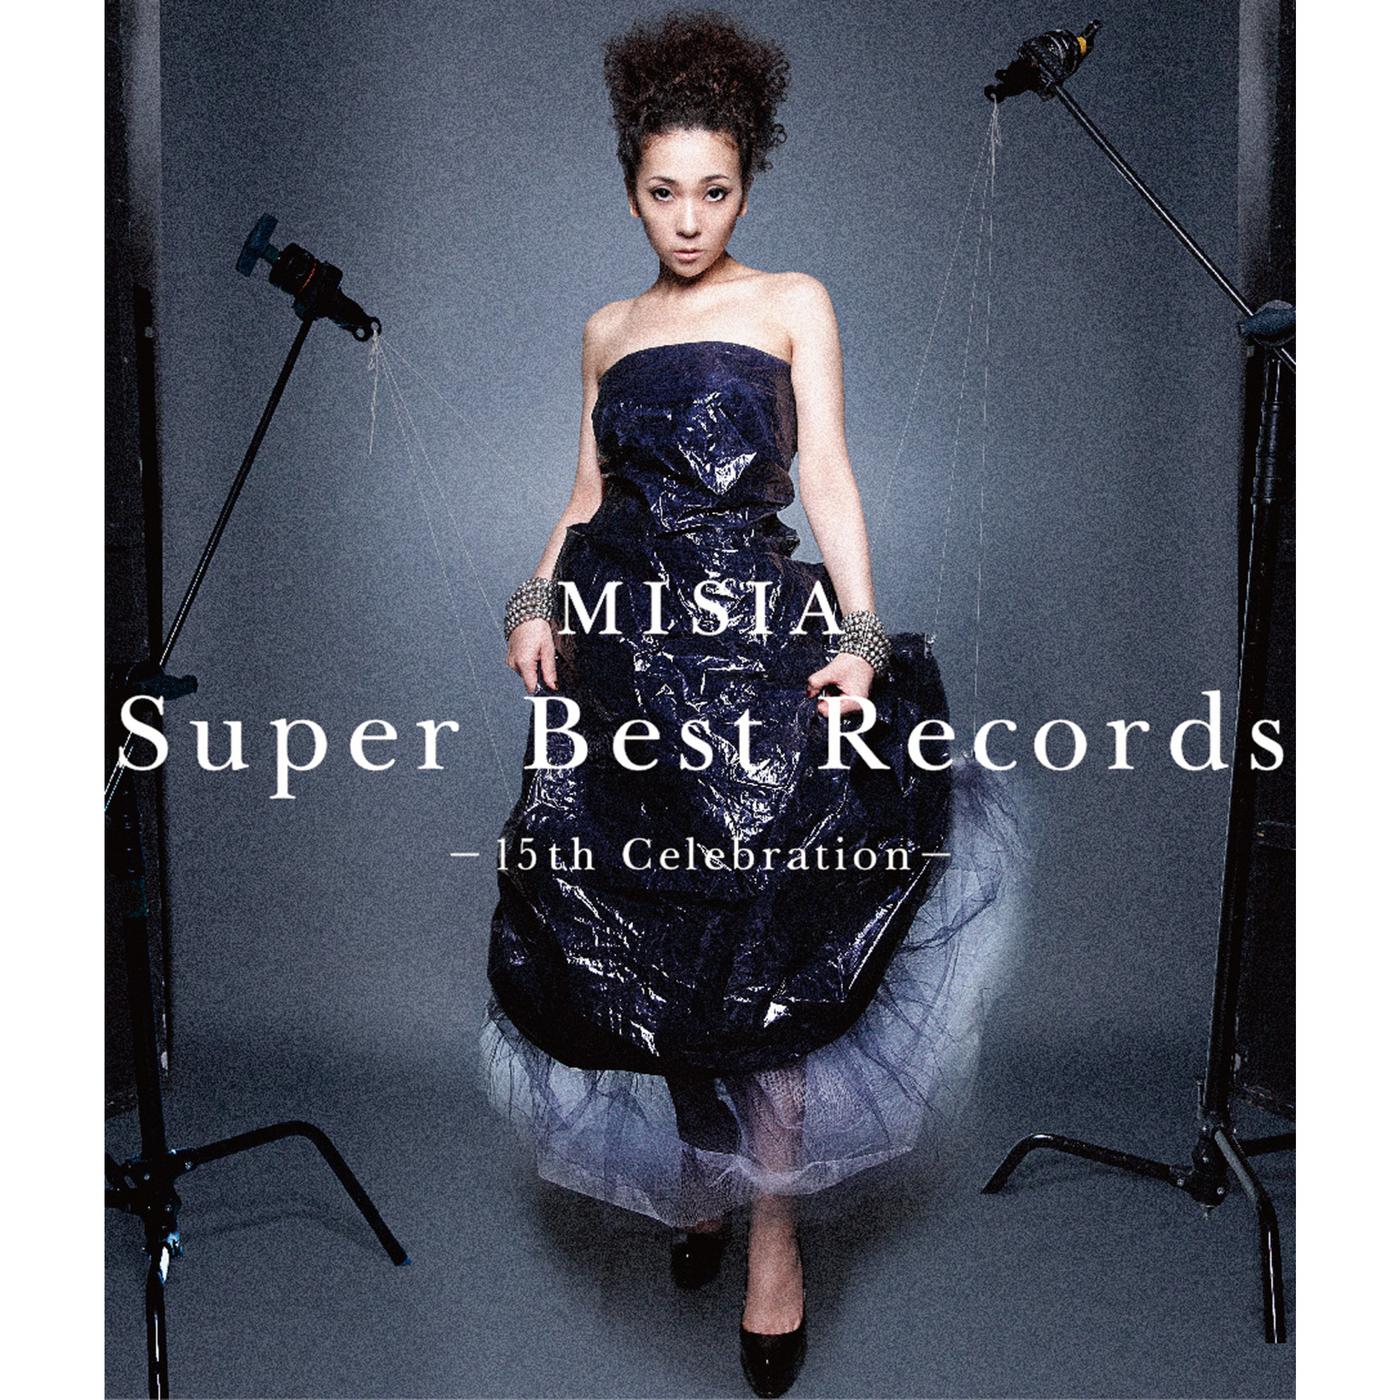 眠れぬ夜は君のせい歌词 歌手MISIA-专辑Super Best Records -15th Celebration--单曲《眠れぬ夜は君のせい》LRC歌词下载